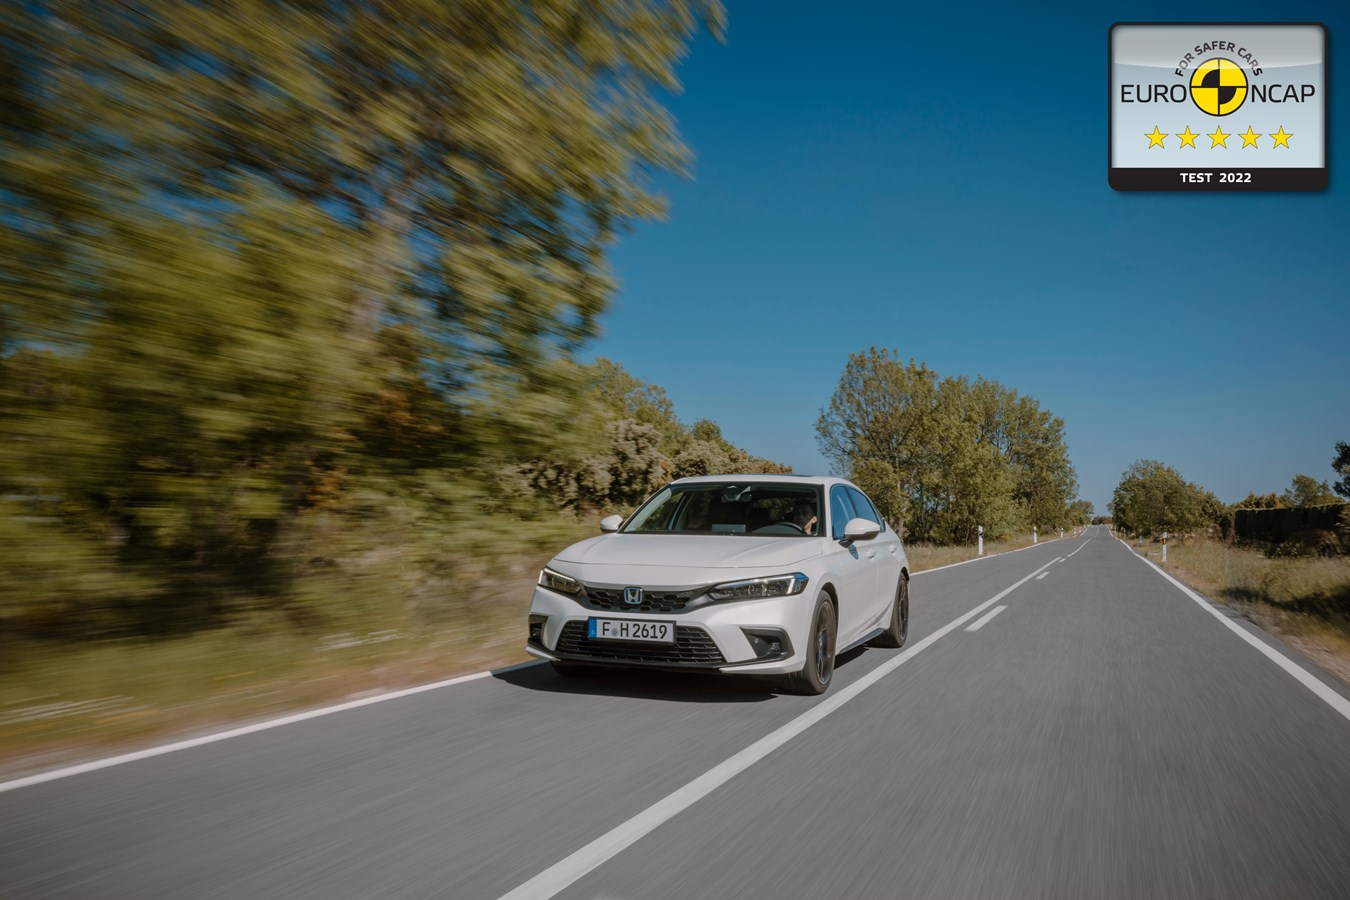 La nuova Honda Civic e:HEV conquista le cinque stelle nei test Euro NCAP